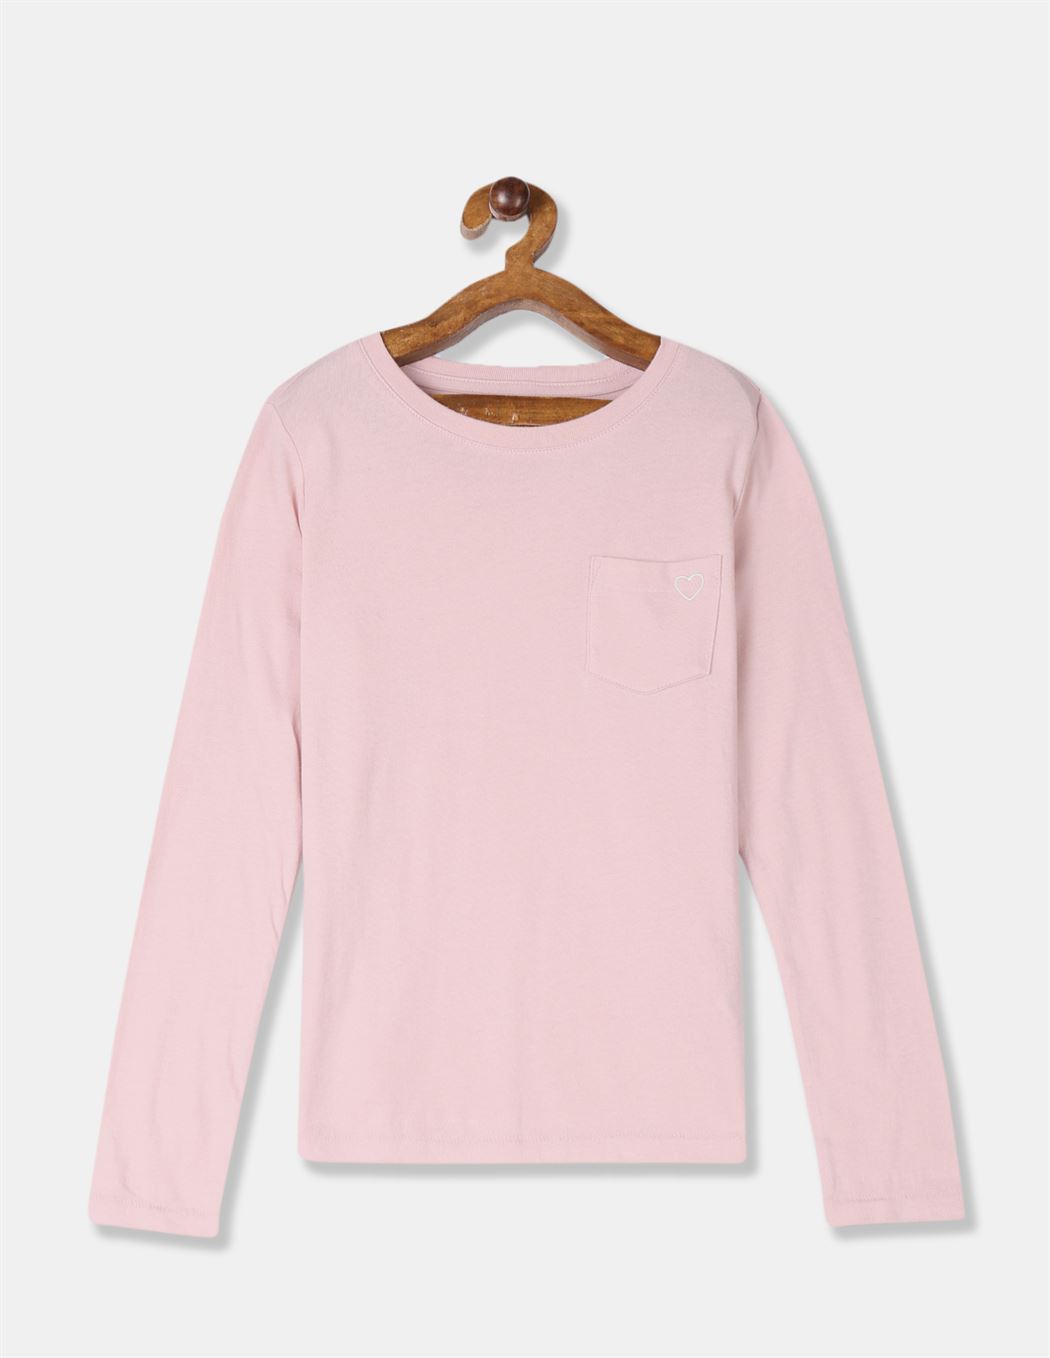 GAP Girls Pink Printed T-Shirt